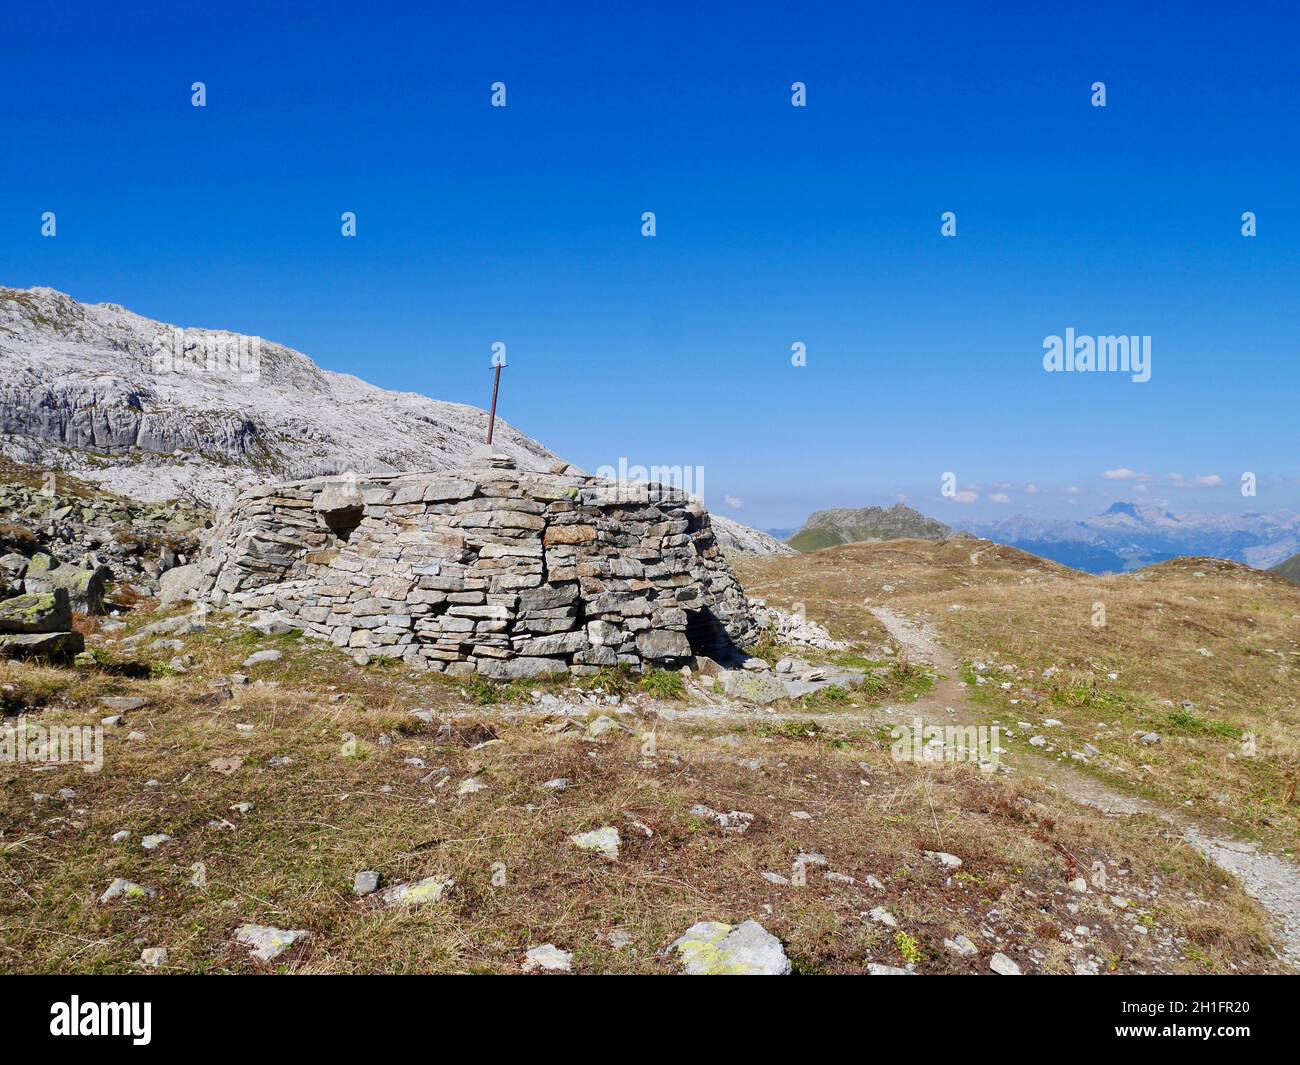 Stone hut in alpine landscape in Praettigau, Graubuenden, Switzerland. Stock Photo